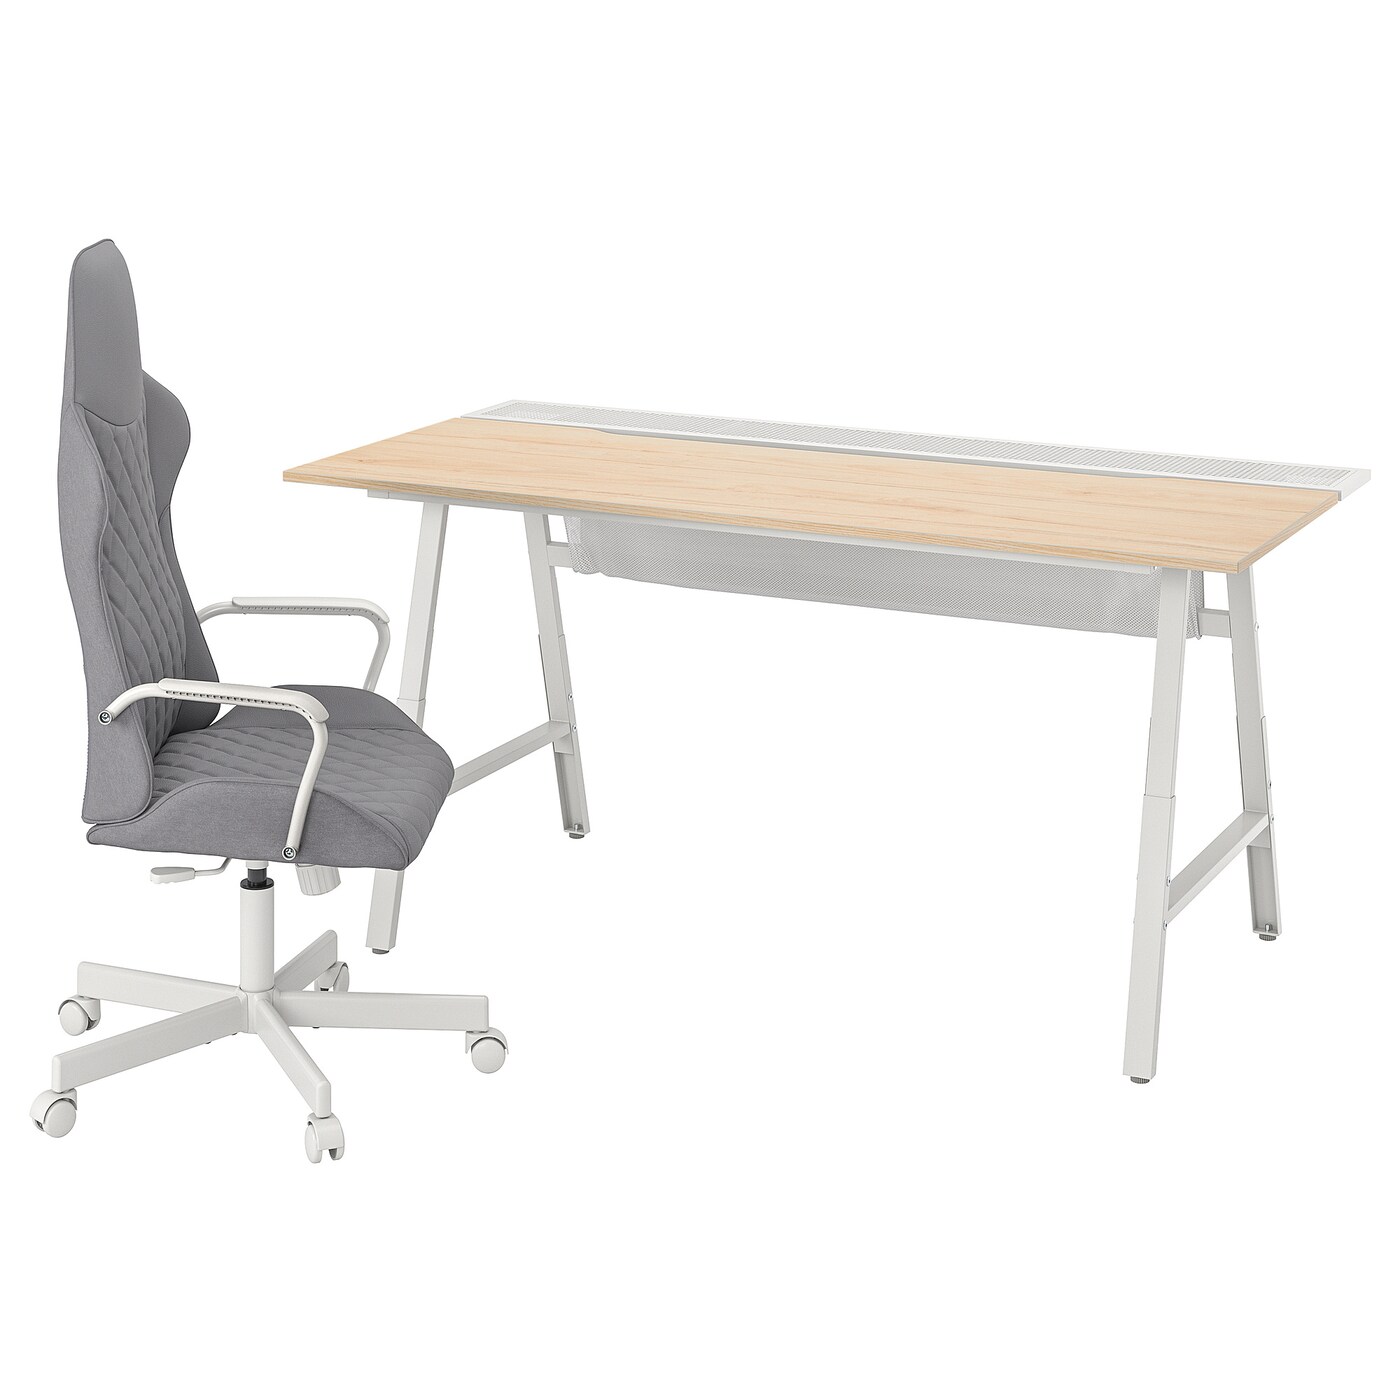 Игровой стол и стул - IKEA UTESPELARE, белый/серый/бежевый, УТЕСПЕЛАРЕ ИКЕА